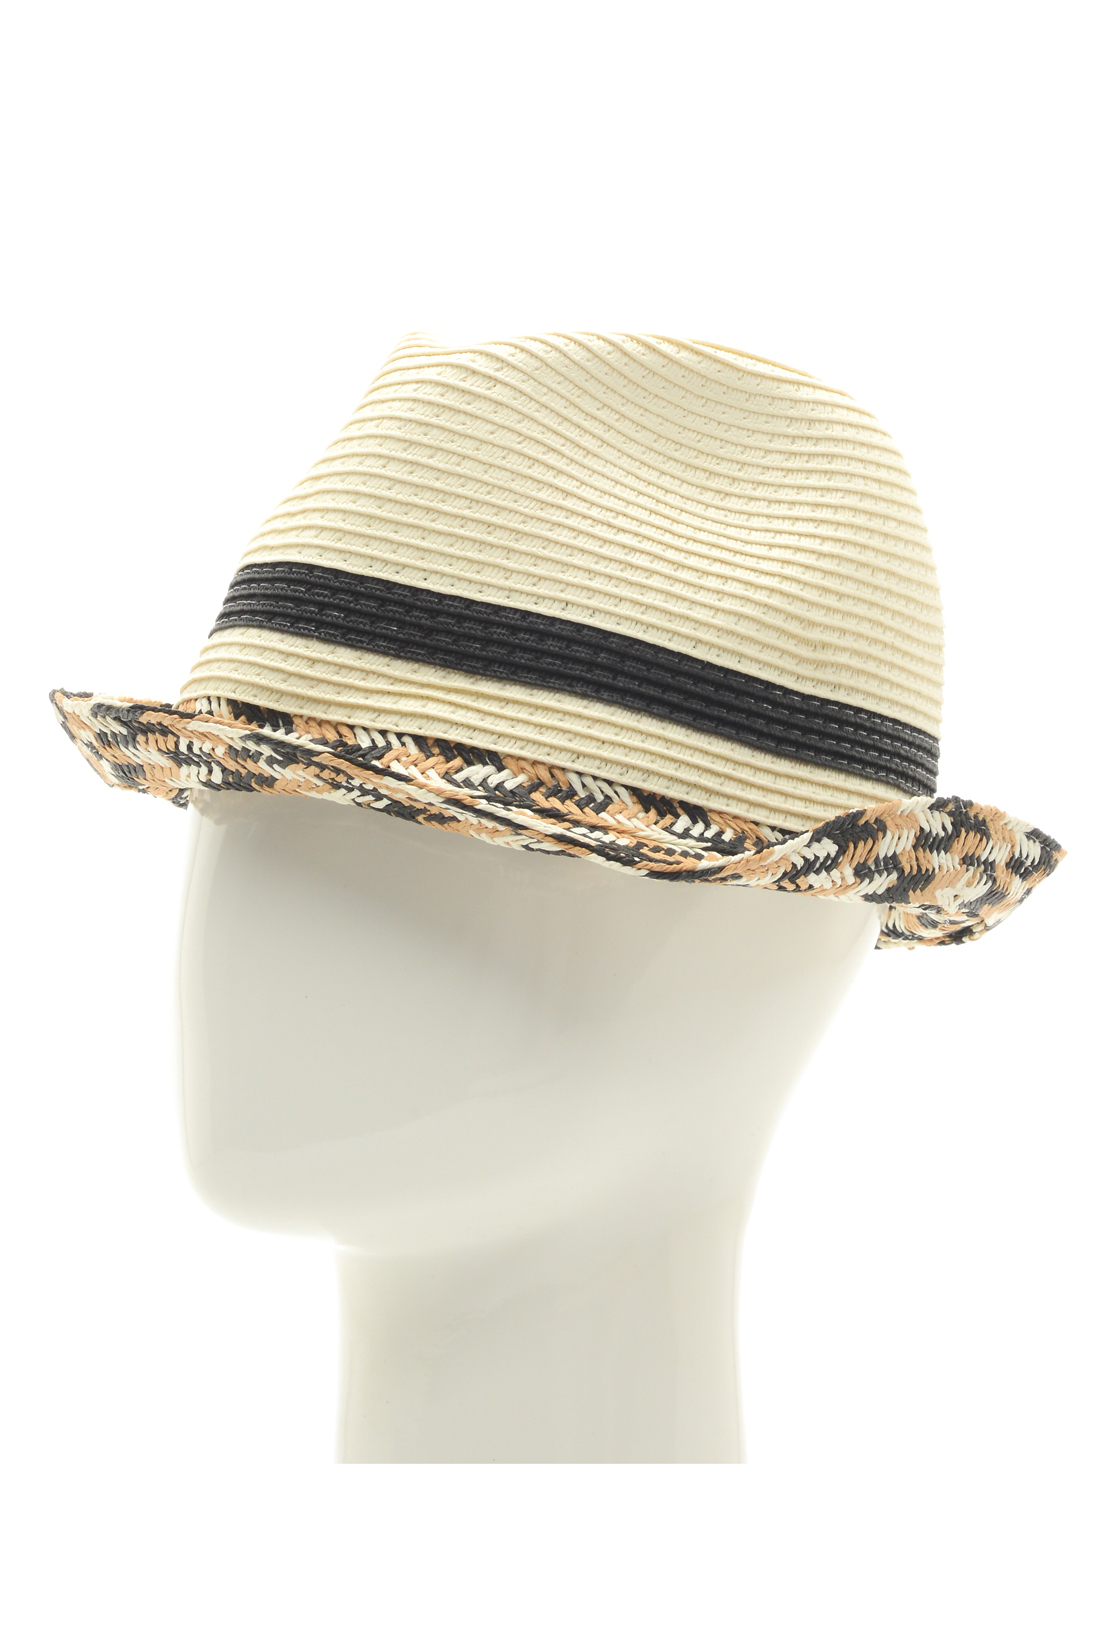 Шляпа с узором (арт. baon B348004), размер Б/р 56, цвет белый Шляпа с узором (арт. baon B348004) - фото 1